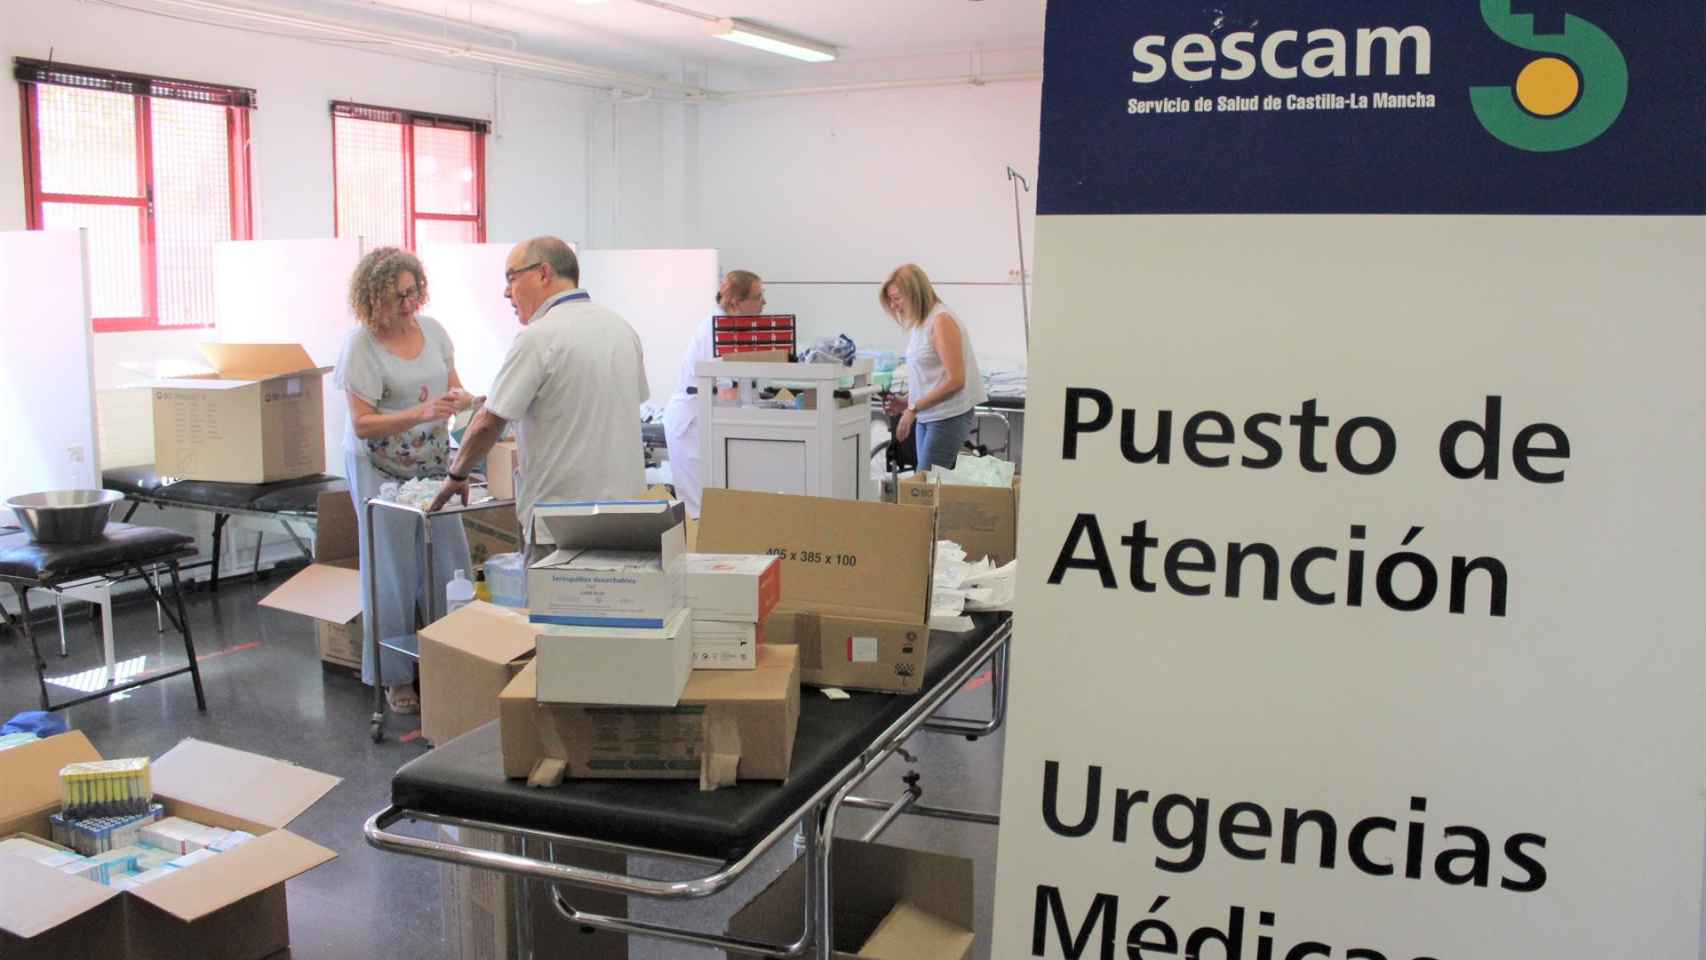 Puesto de Atención a Urgencias Médicas en la Feria de Albacete. Foto: Sescam.